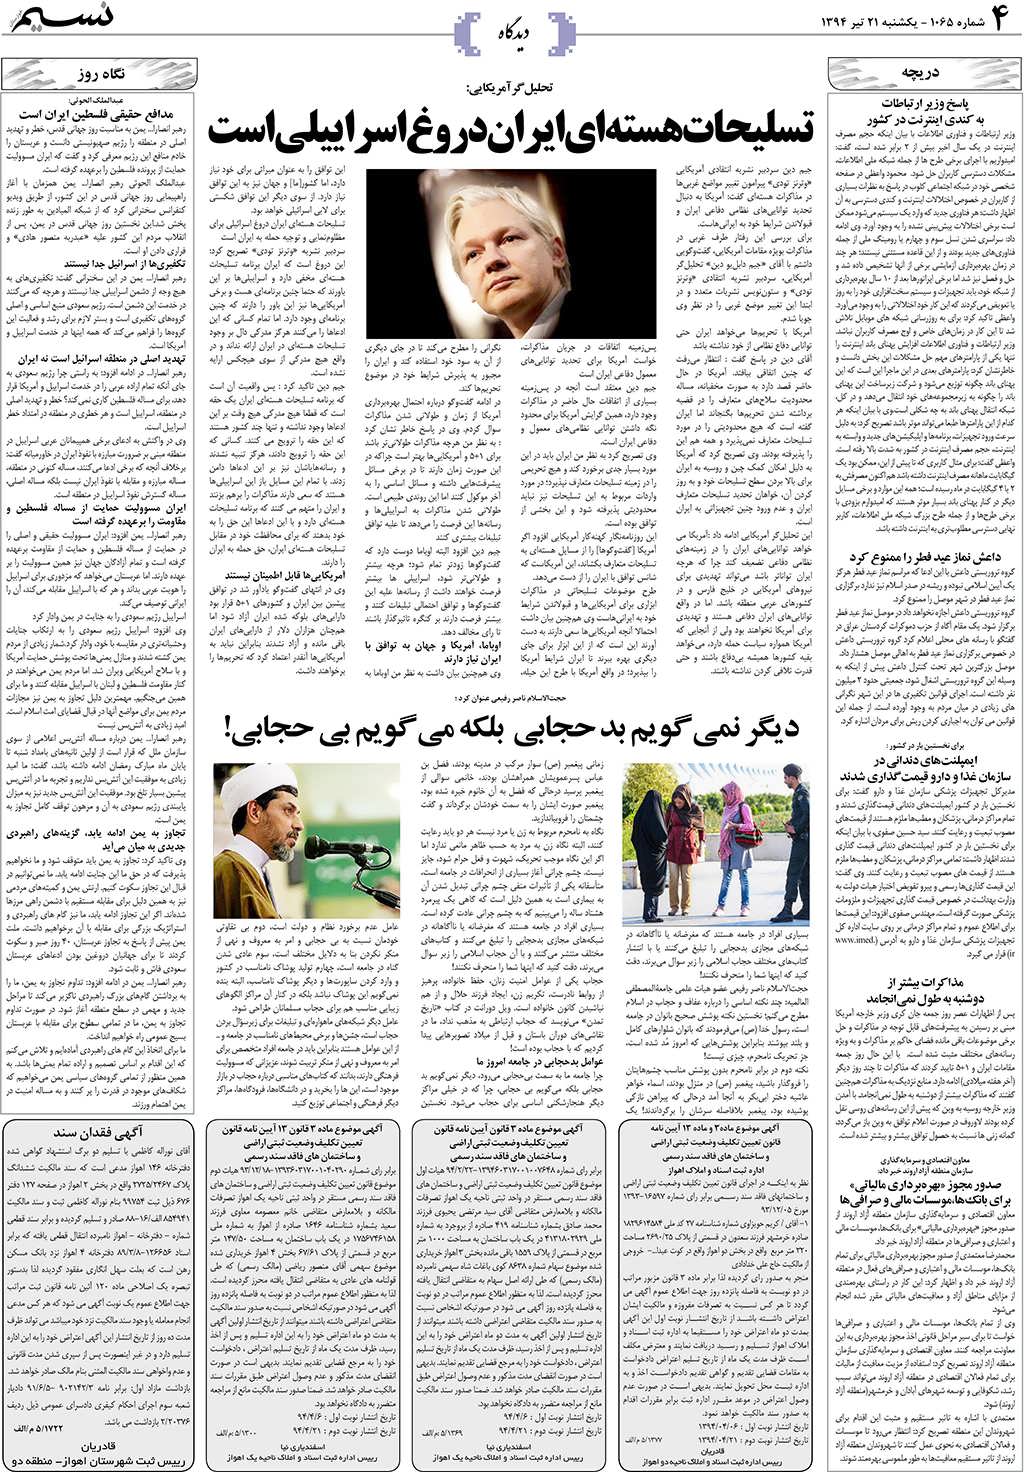 صفحه دیدگاه روزنامه نسیم شماره 1065